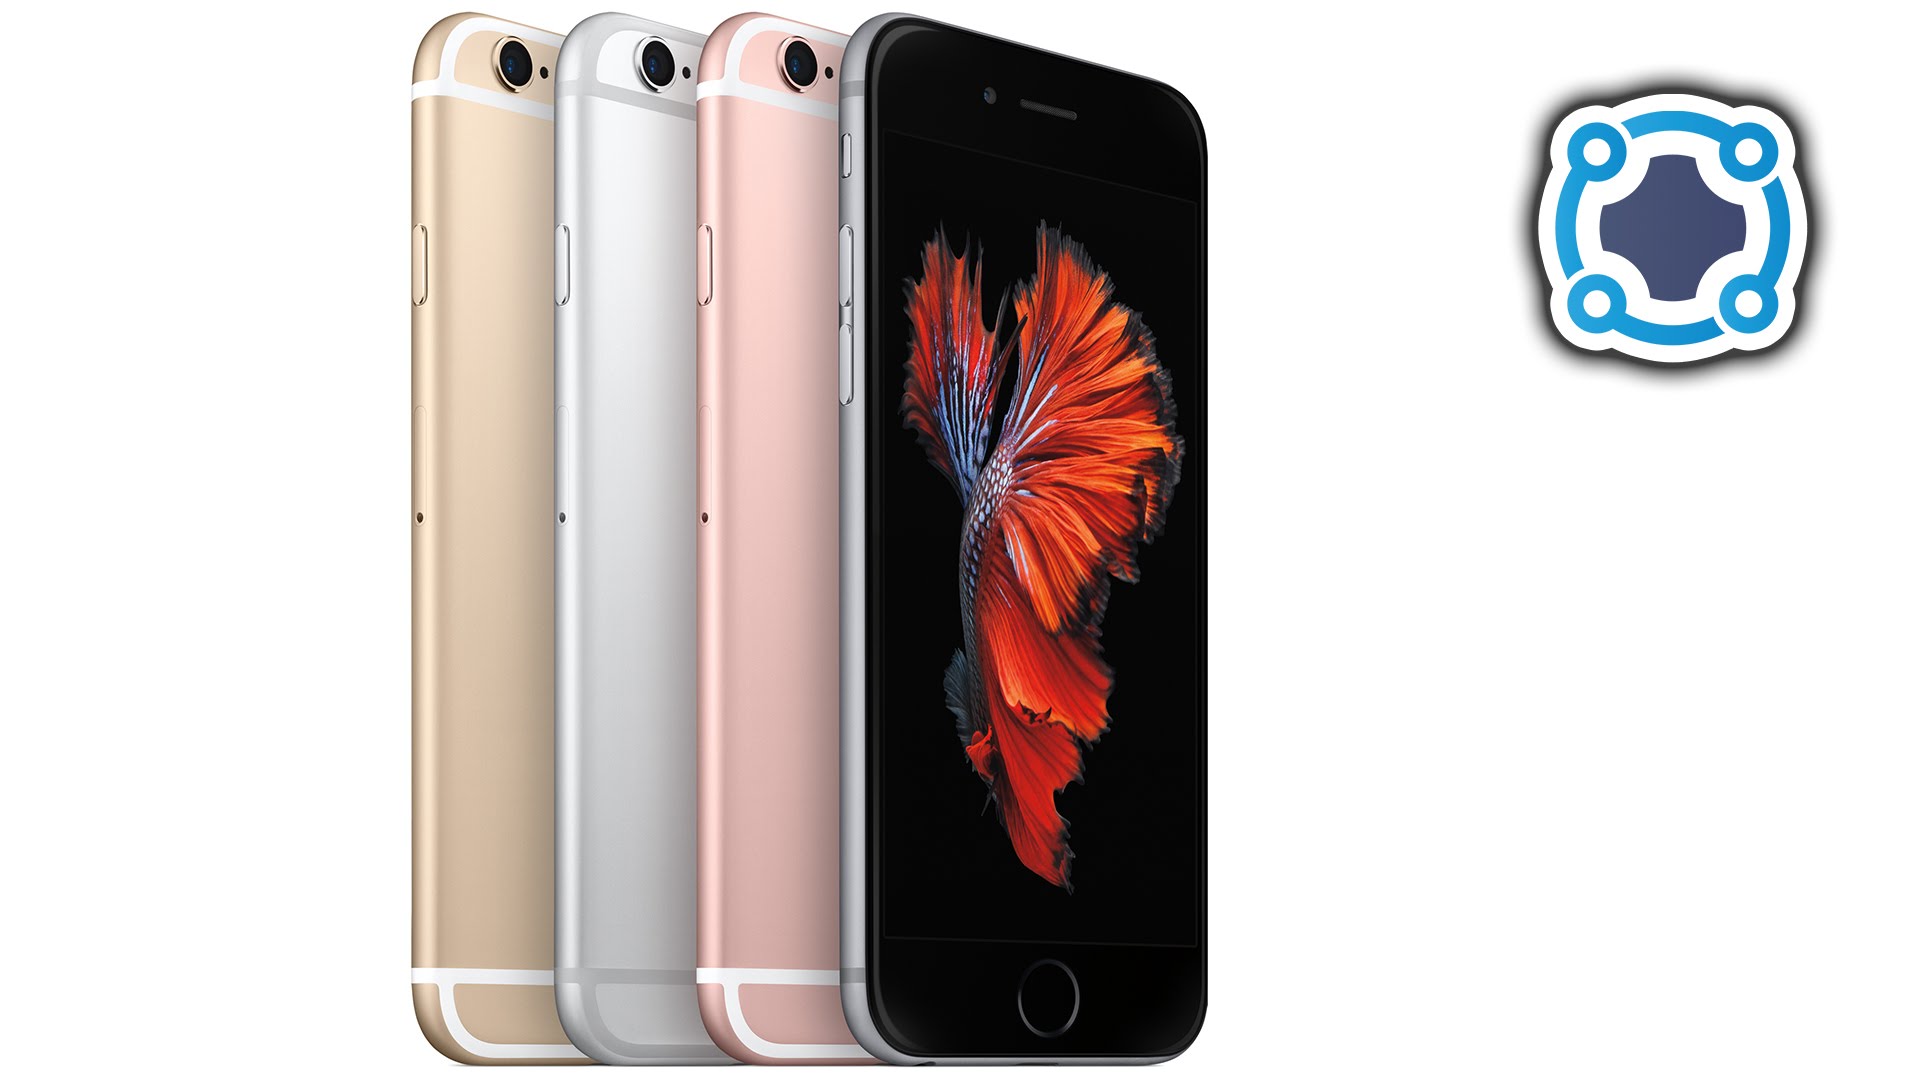 Apple iPhone 6s & iPhone 6s Plus - Apple Event Recap